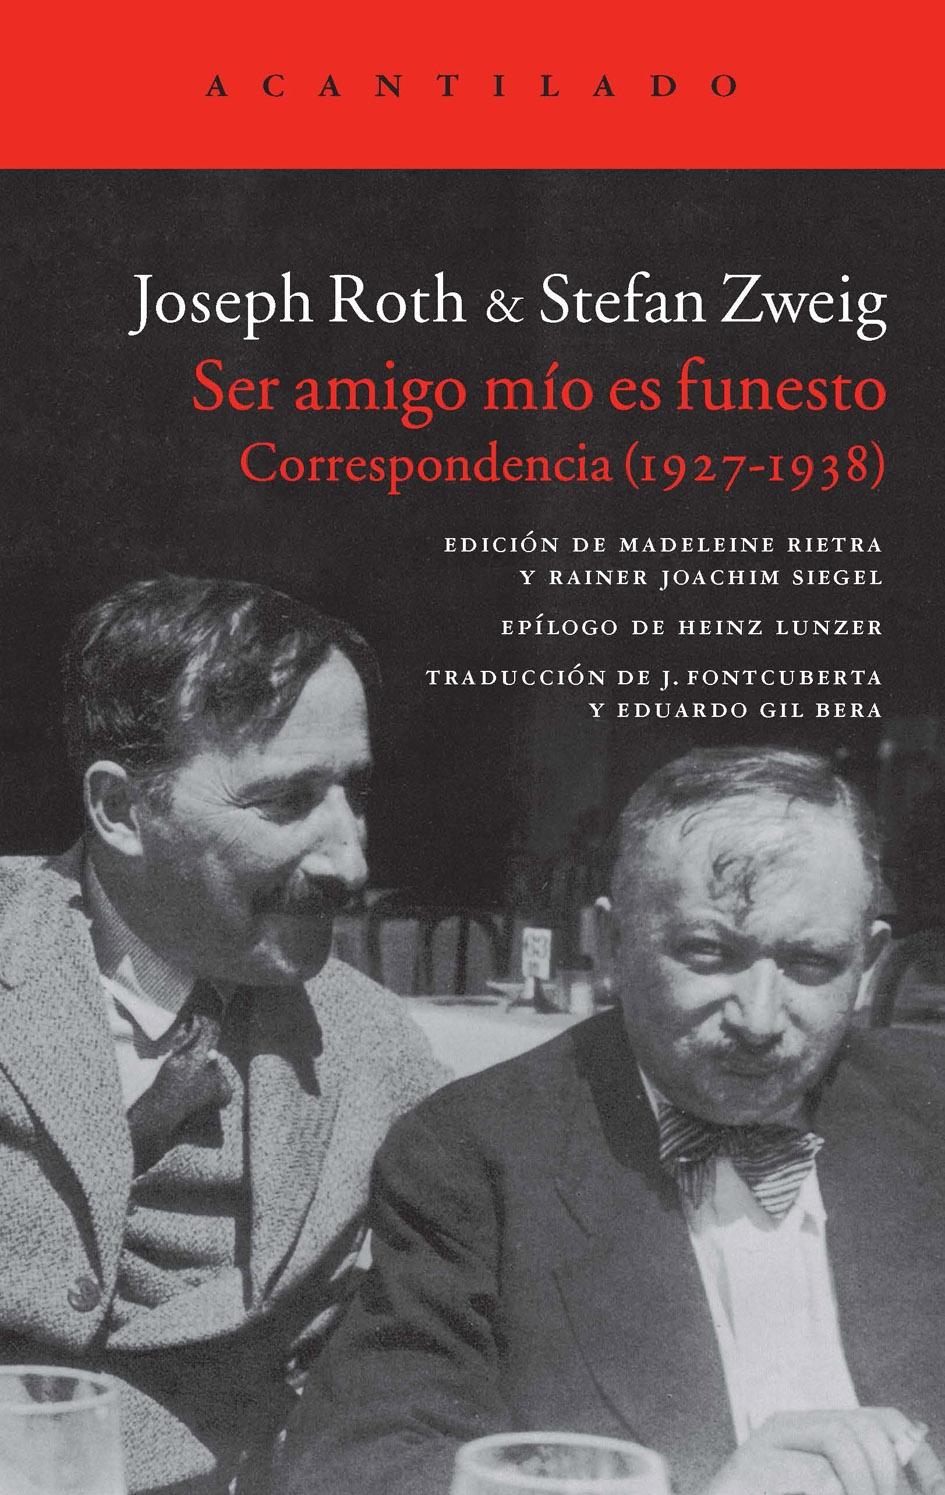 Ser Amigo mío Es Funesto "Correspondencia 1927-1938 Roth & Zweig". 